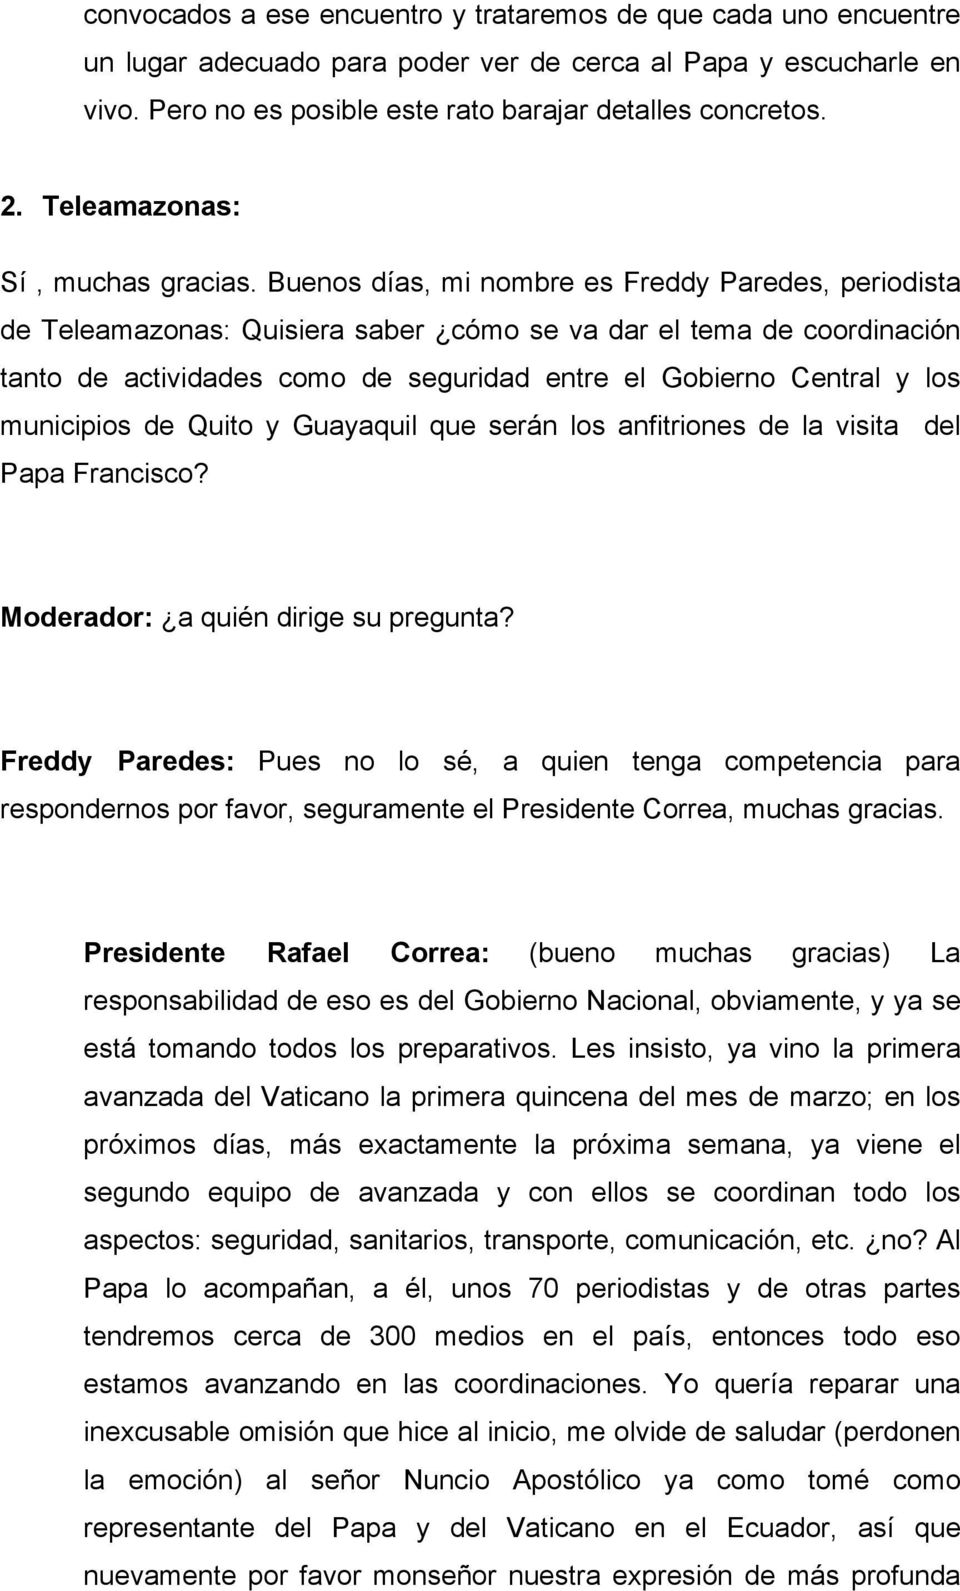 Buenos días, mi nombre es Freddy Paredes, periodista de Teleamazonas: Quisiera saber cómo se va dar el tema de coordinación tanto de actividades como de seguridad entre el Gobierno Central y los